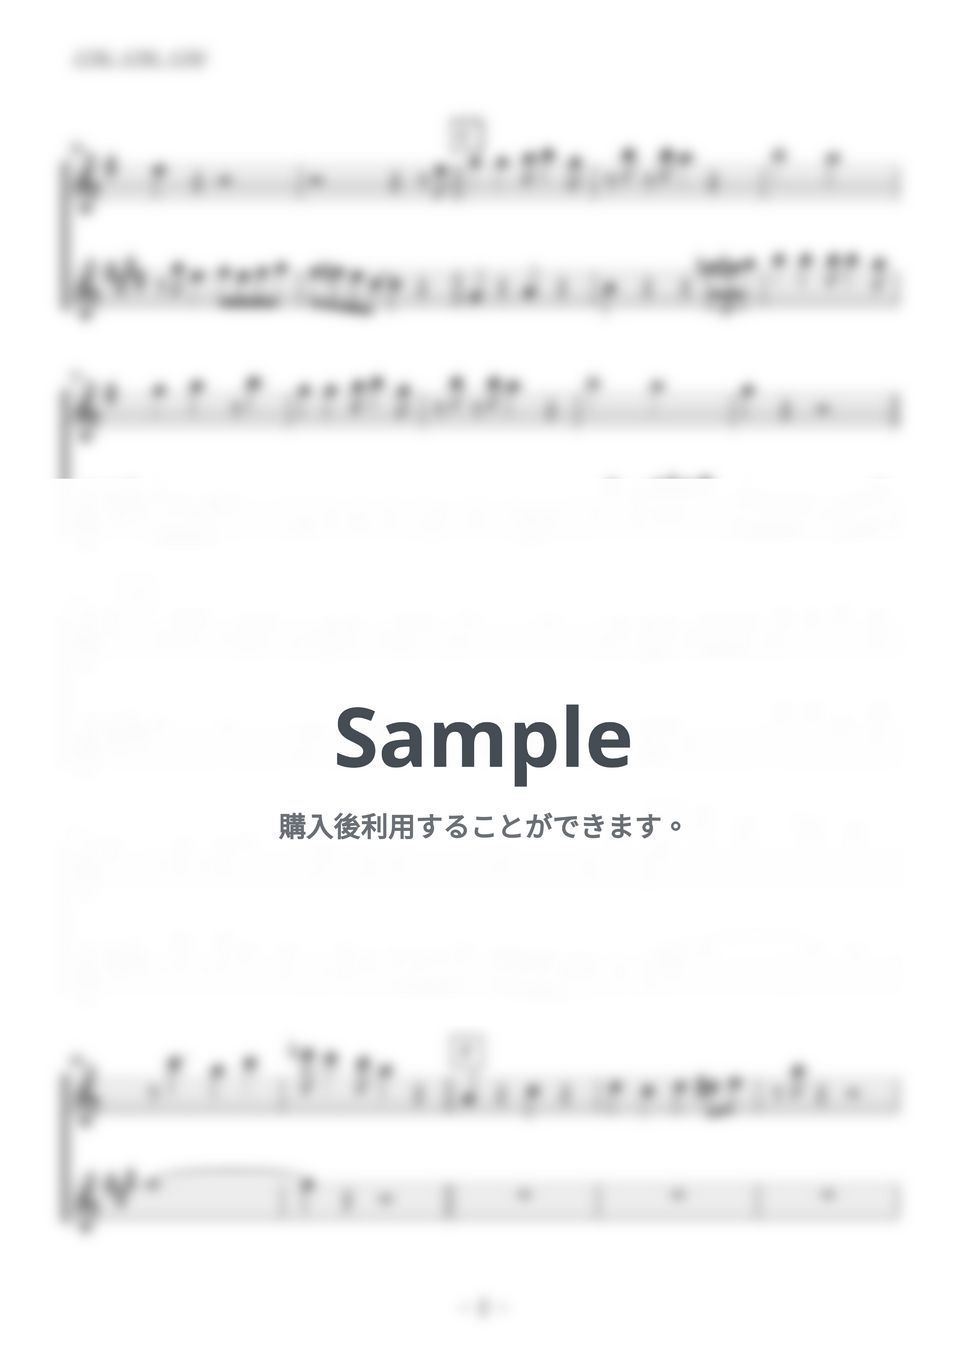 ベニーグッドマン - Sing,Sing,Sing (フルート・アルトサックス二重奏／無伴奏) by kiminabe